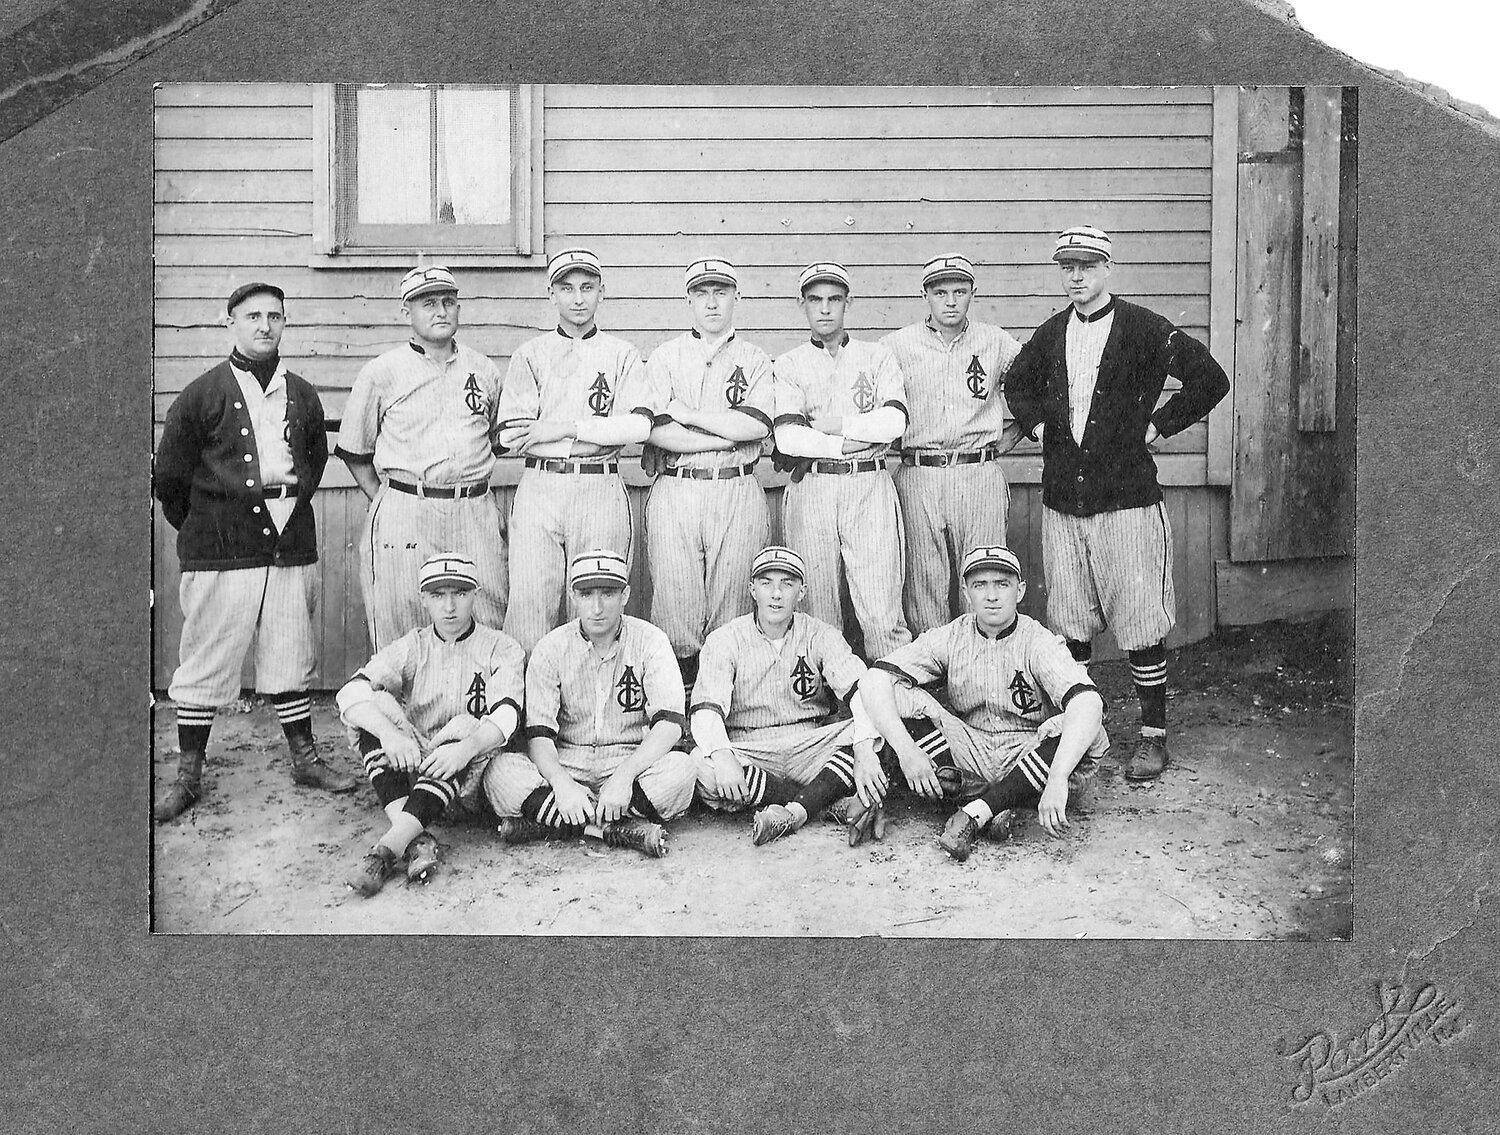 A vintage baseball team photo.